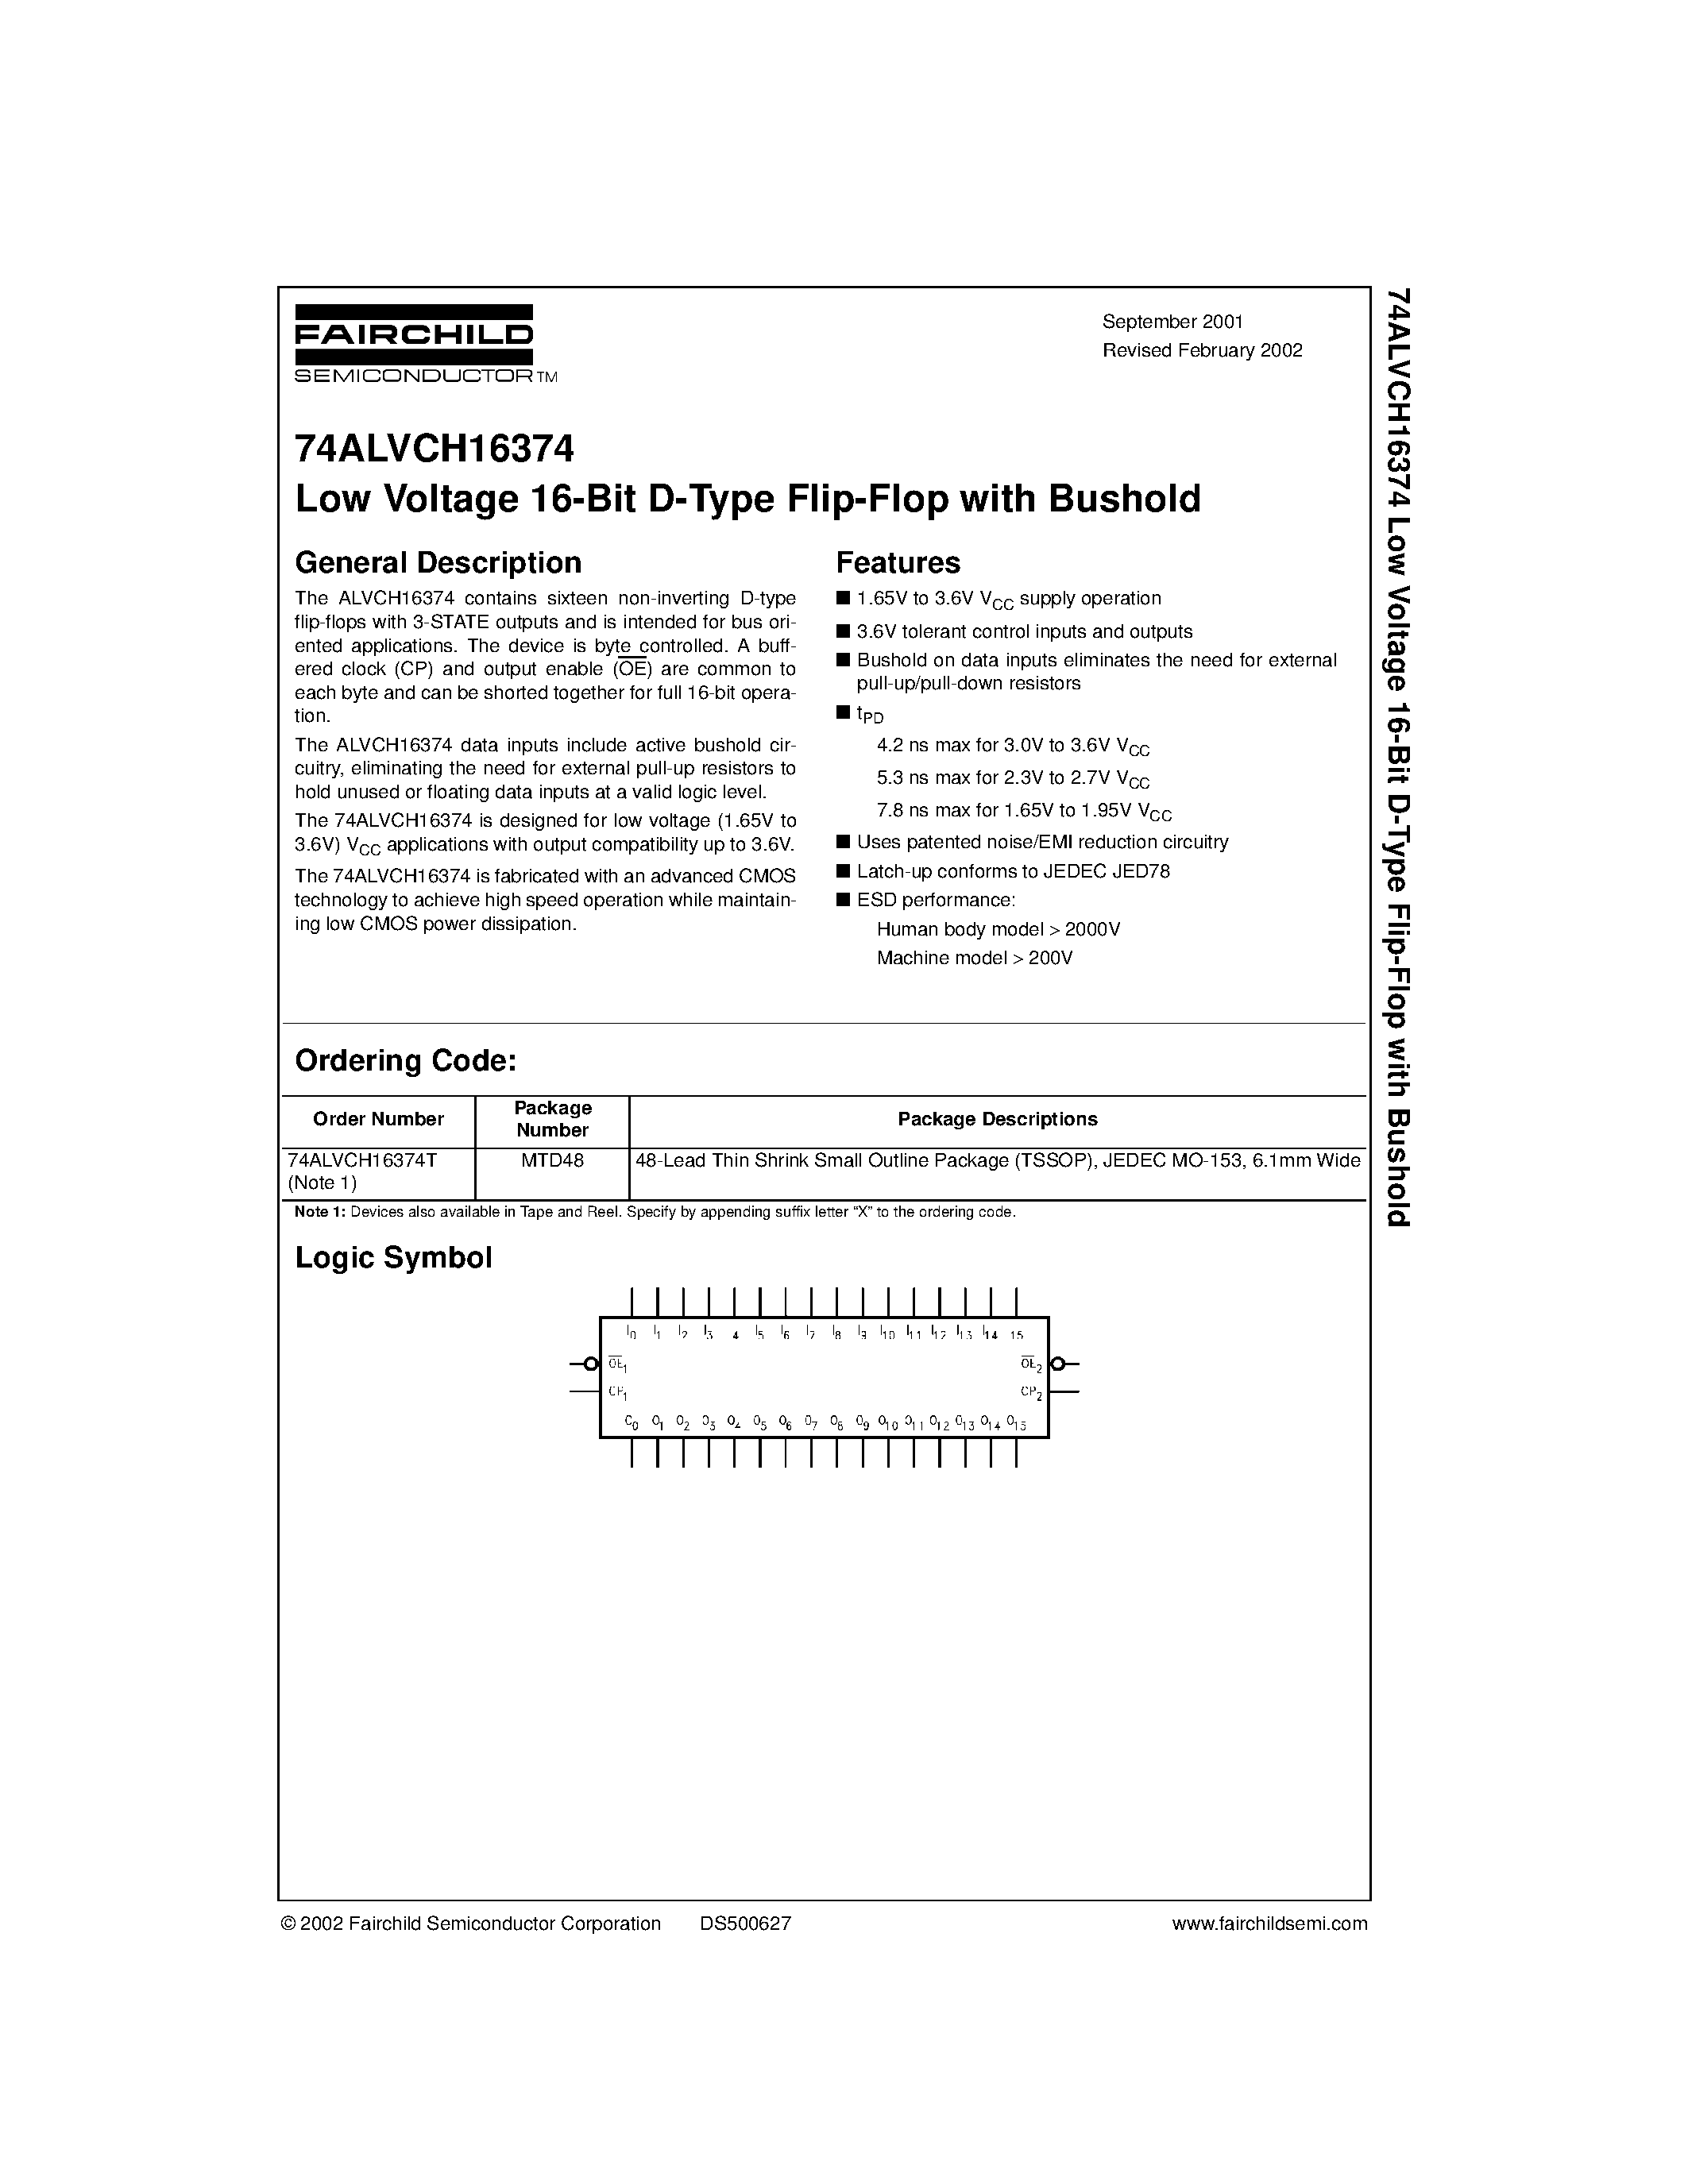 Datasheet 74ALVCH16374T - Low Voltage 16-Bit D-Type Flip-Flop with Bushold page 1